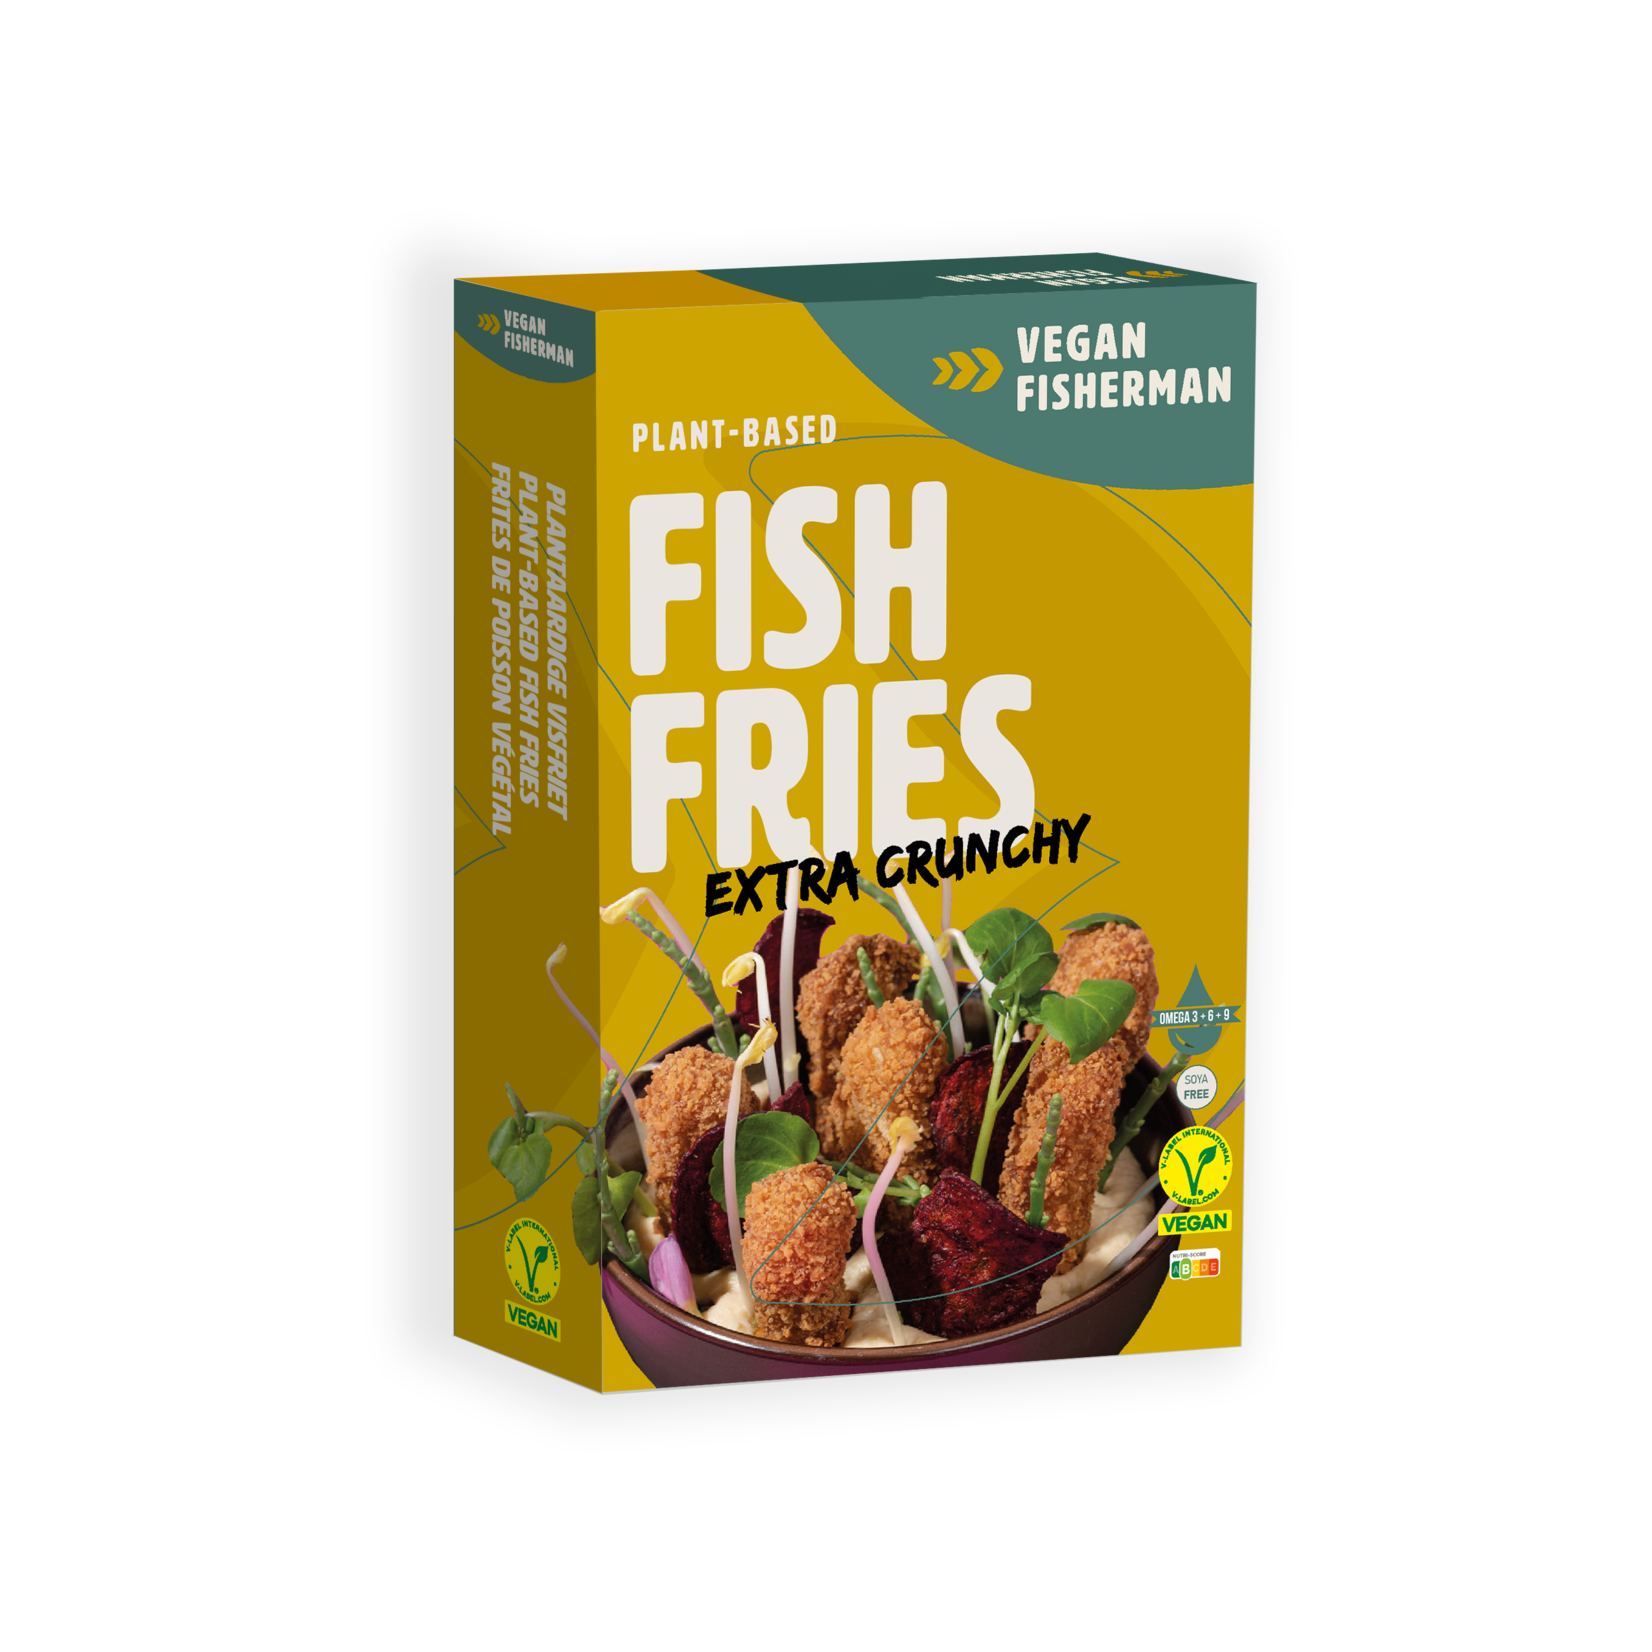 Vegan Visboer - Vegan Fisherman Vegan Fisherman Fish Fries | Plant-based  Fish Fries | Vegan Fish Substitute